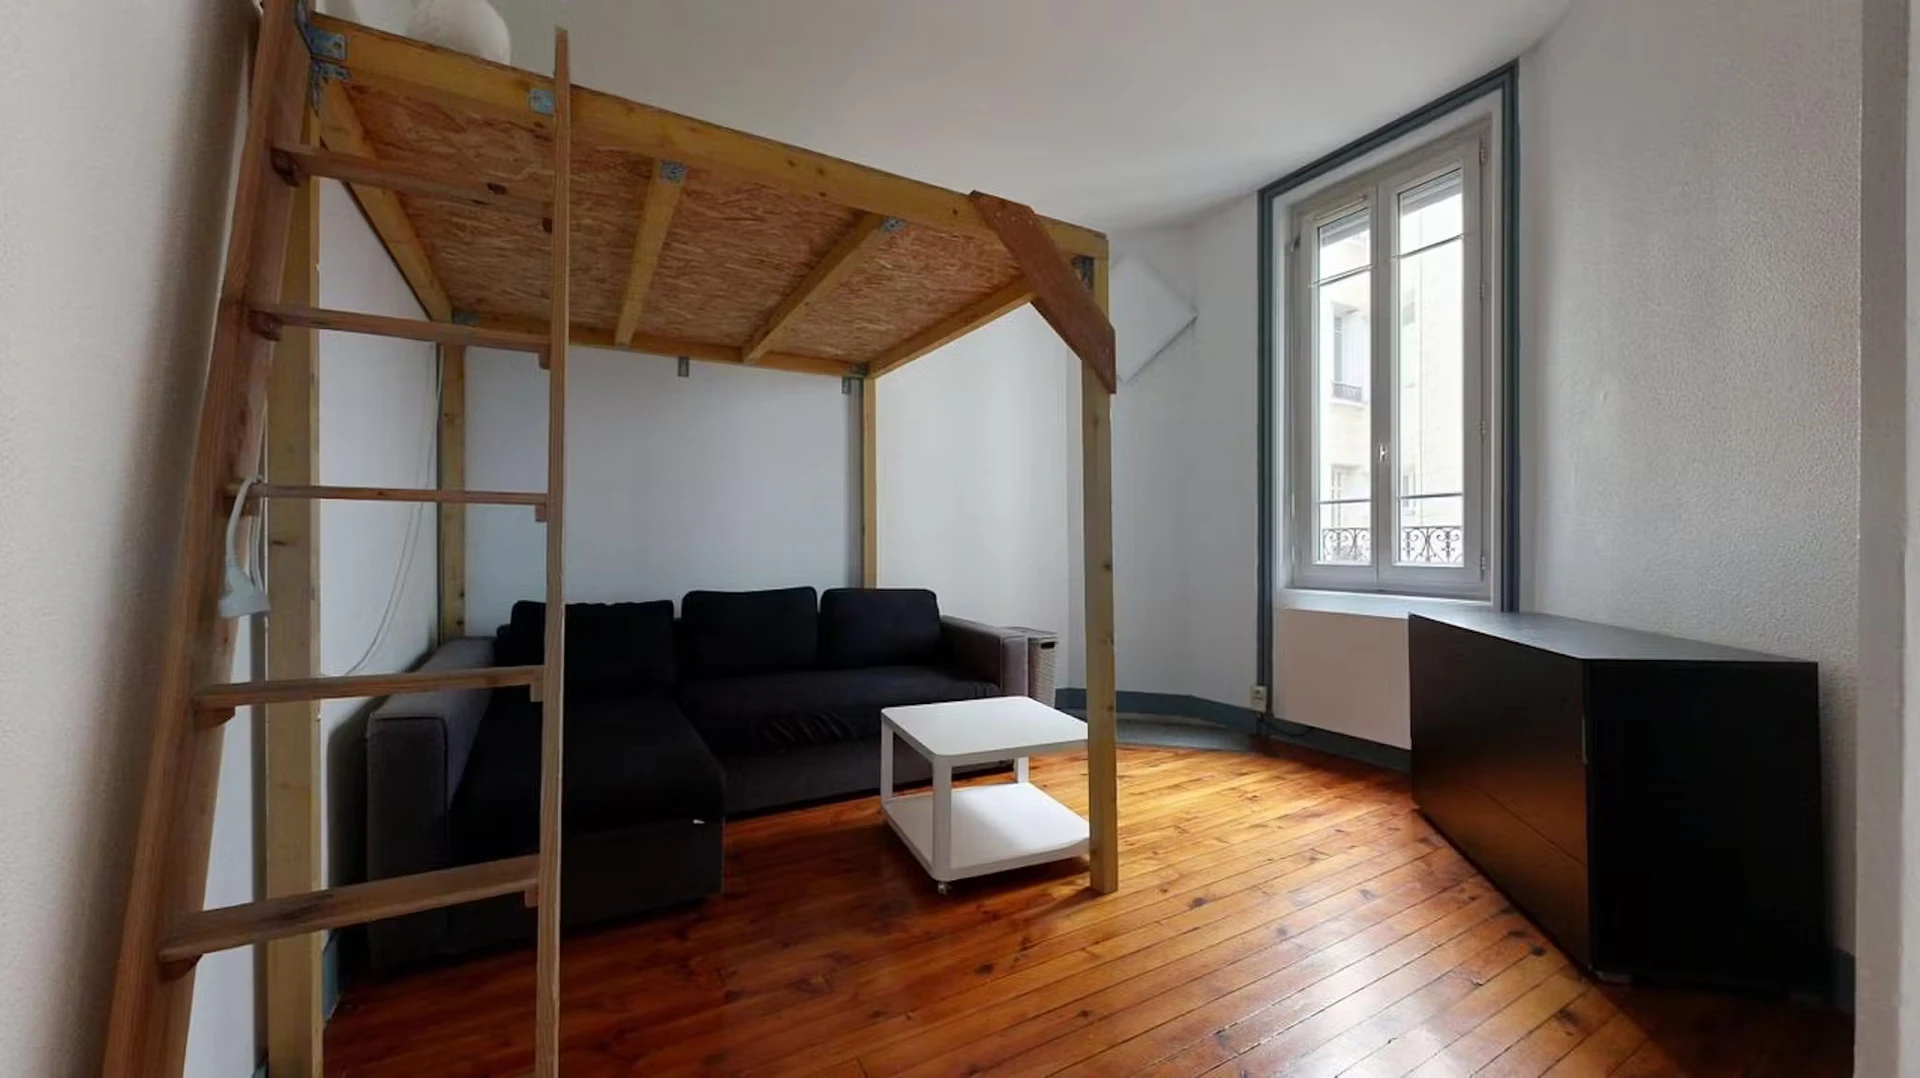 Appartement entièrement meublé à Saint-étienne